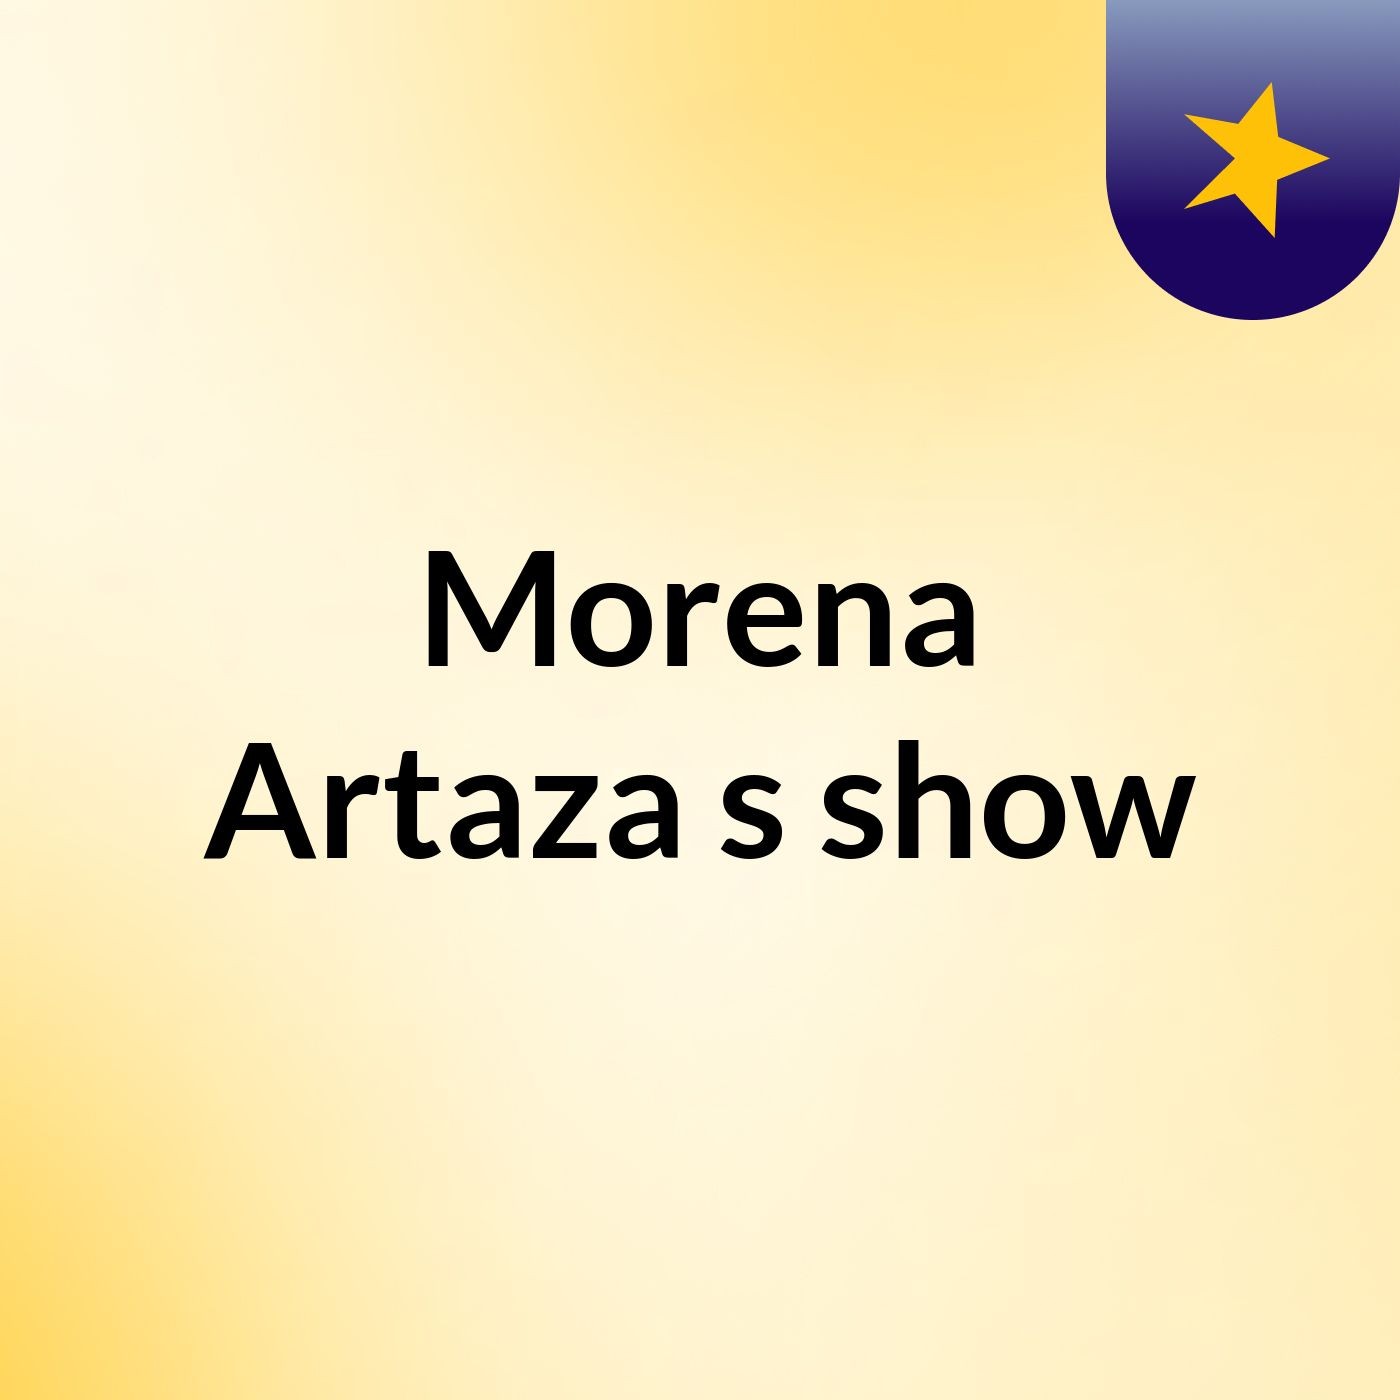 Morena Artaza's show